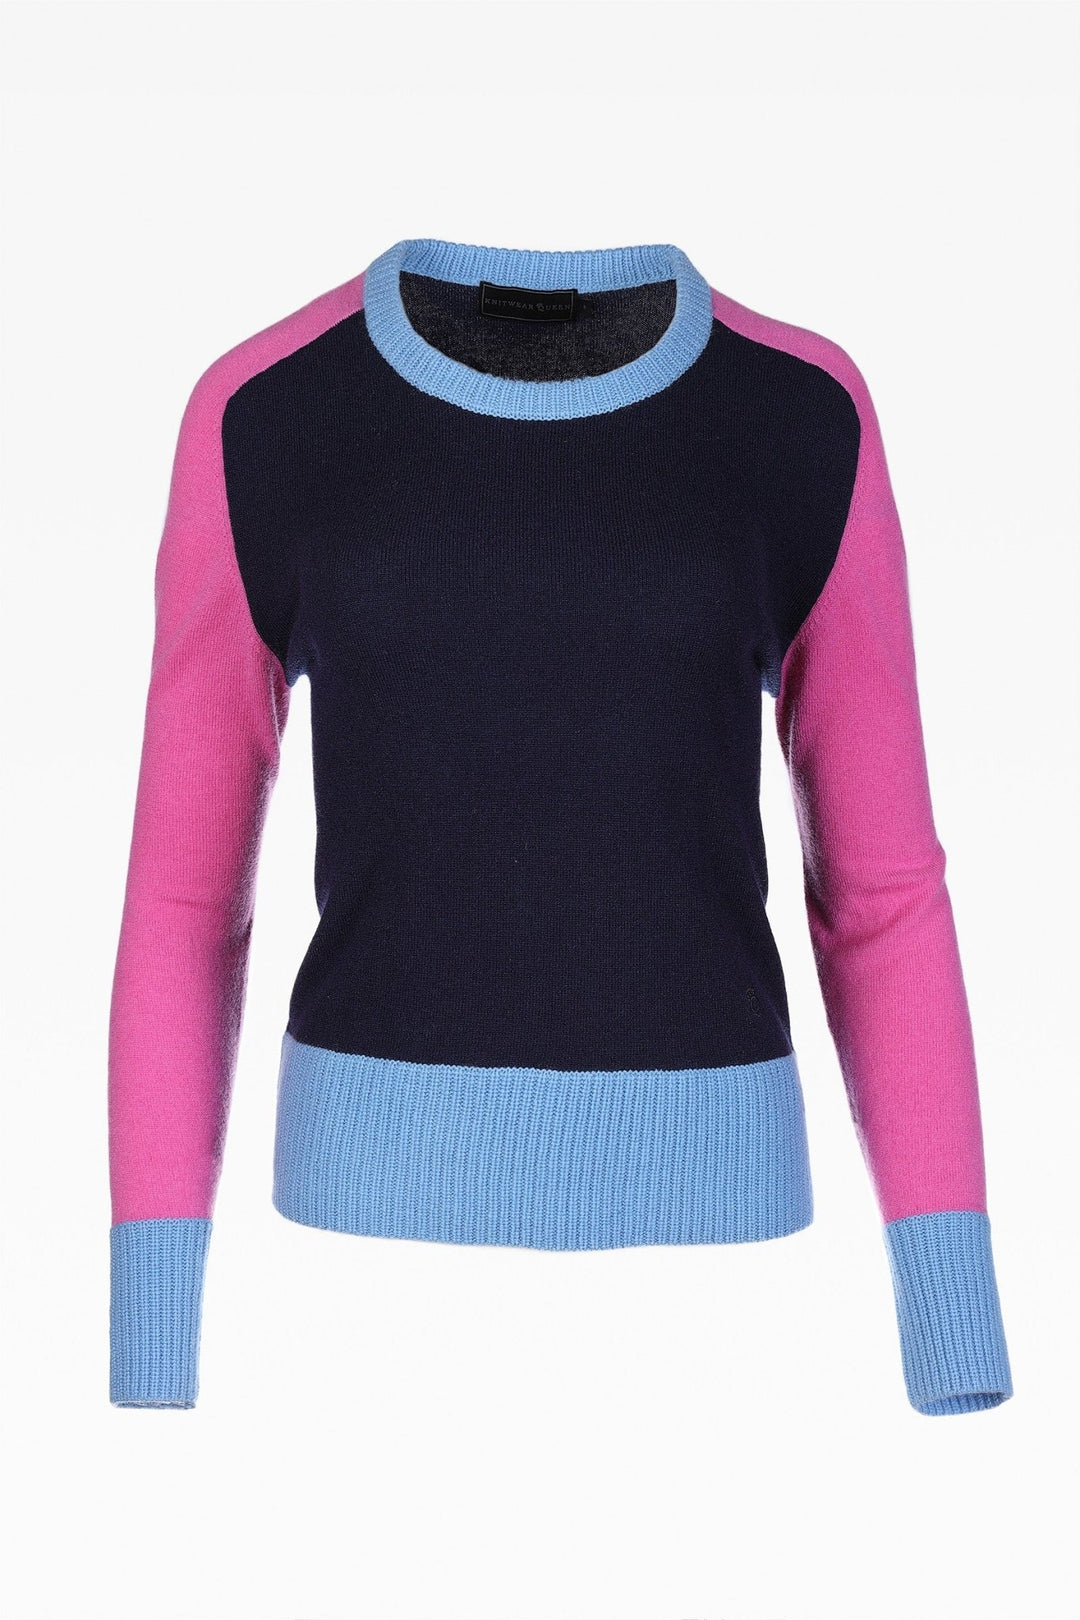 Alex Colour Block Sweater - Dunedin Cashmere